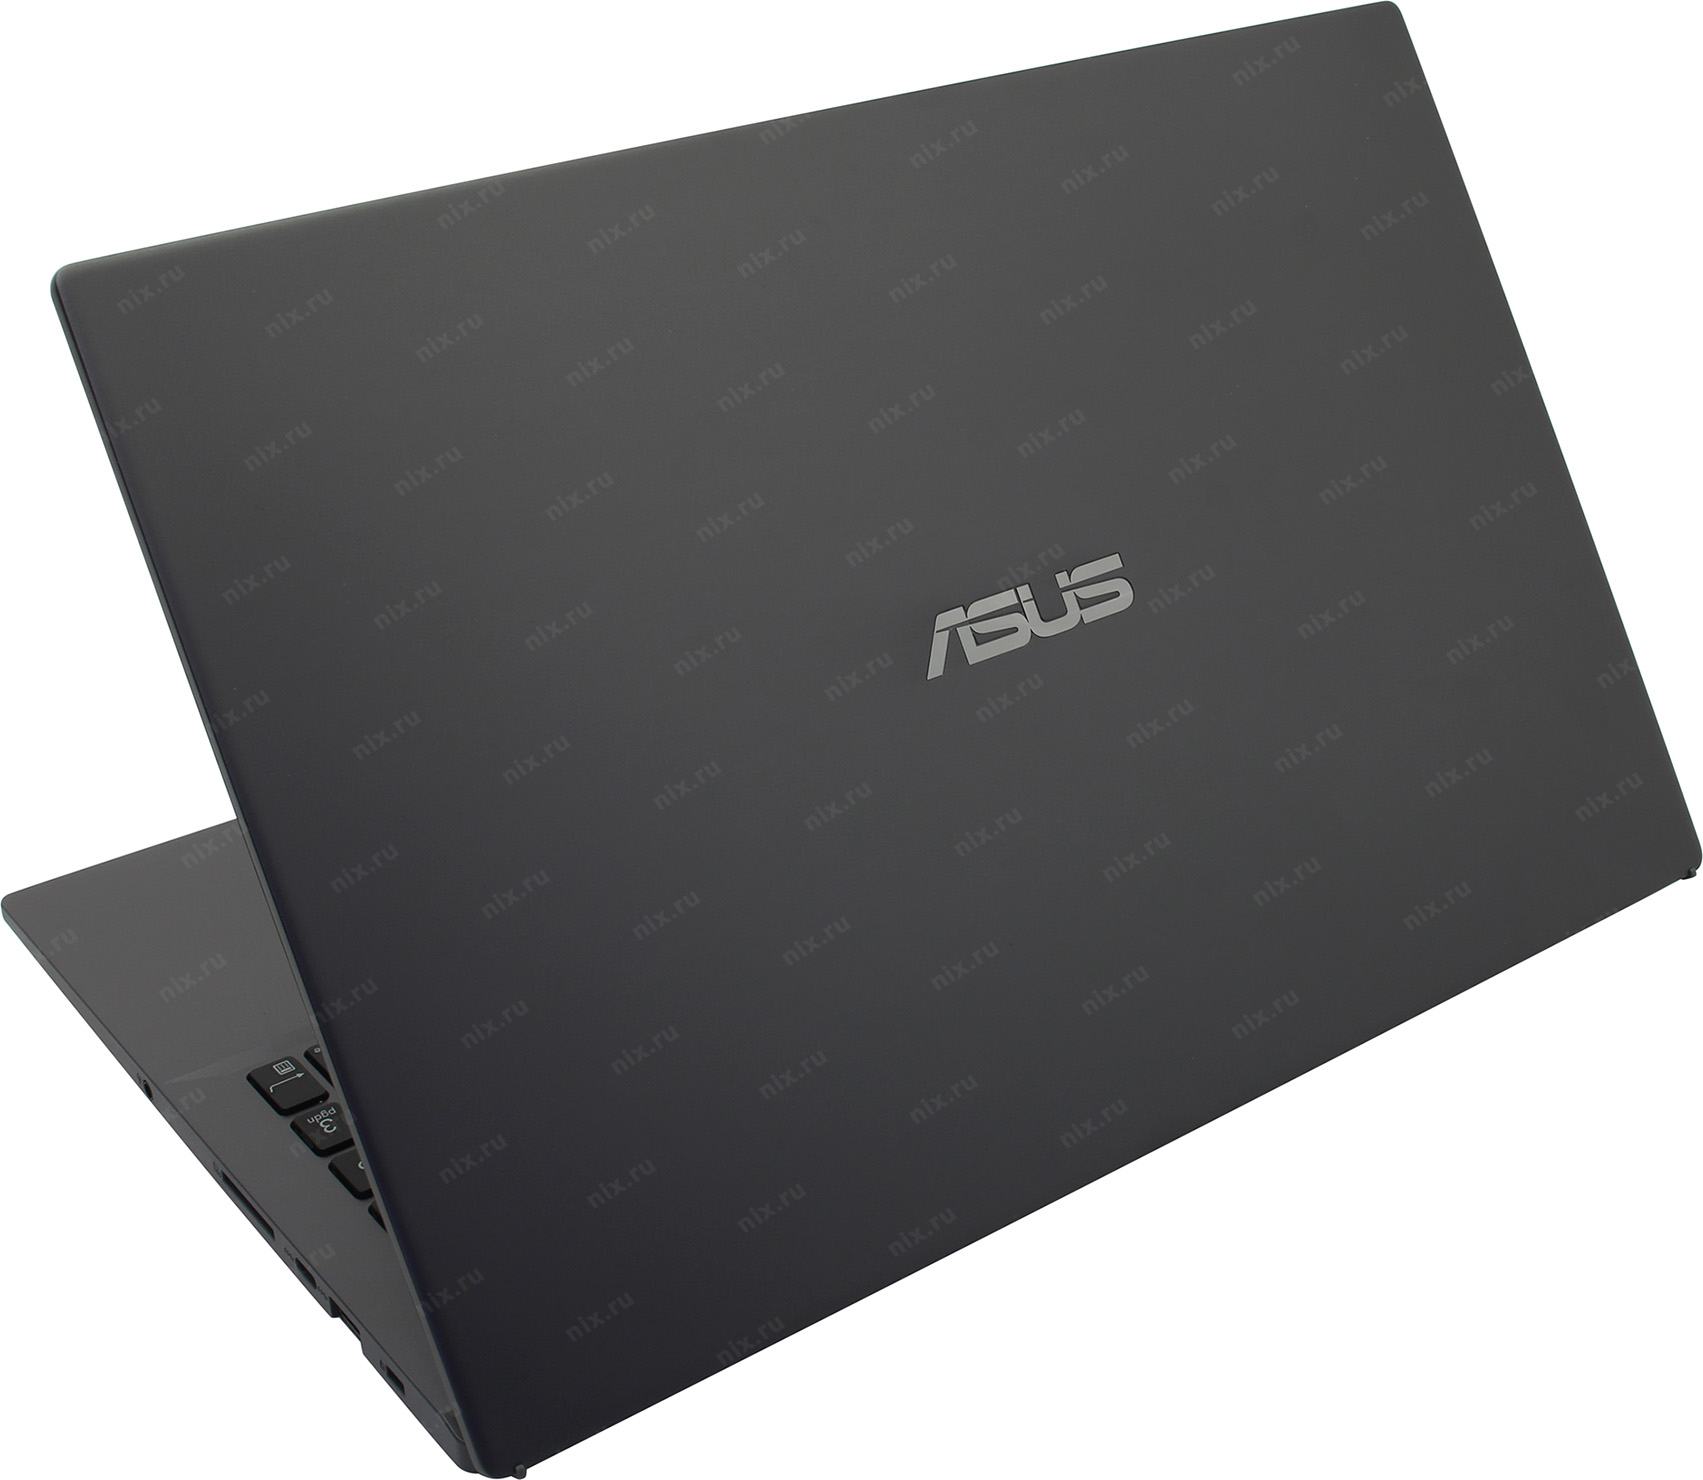 Ноутбук Asus Pro P3540fb Bq0264 Купить